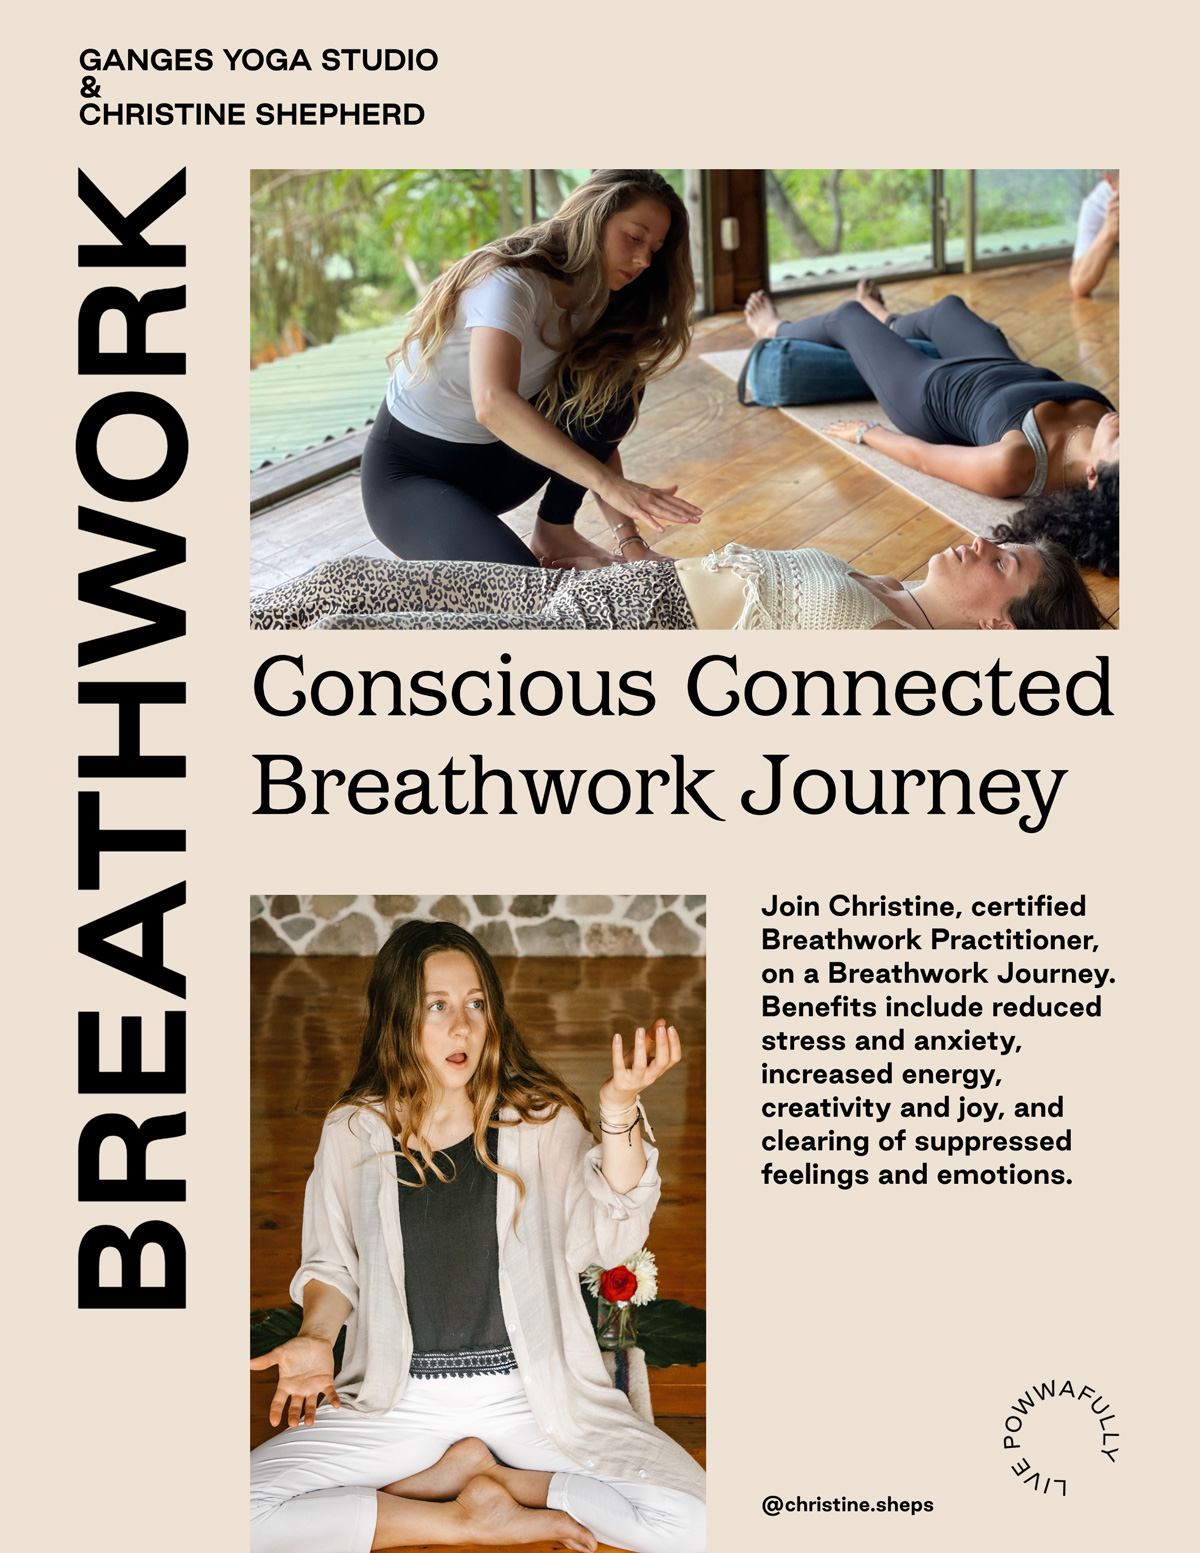 Breathwork class poster